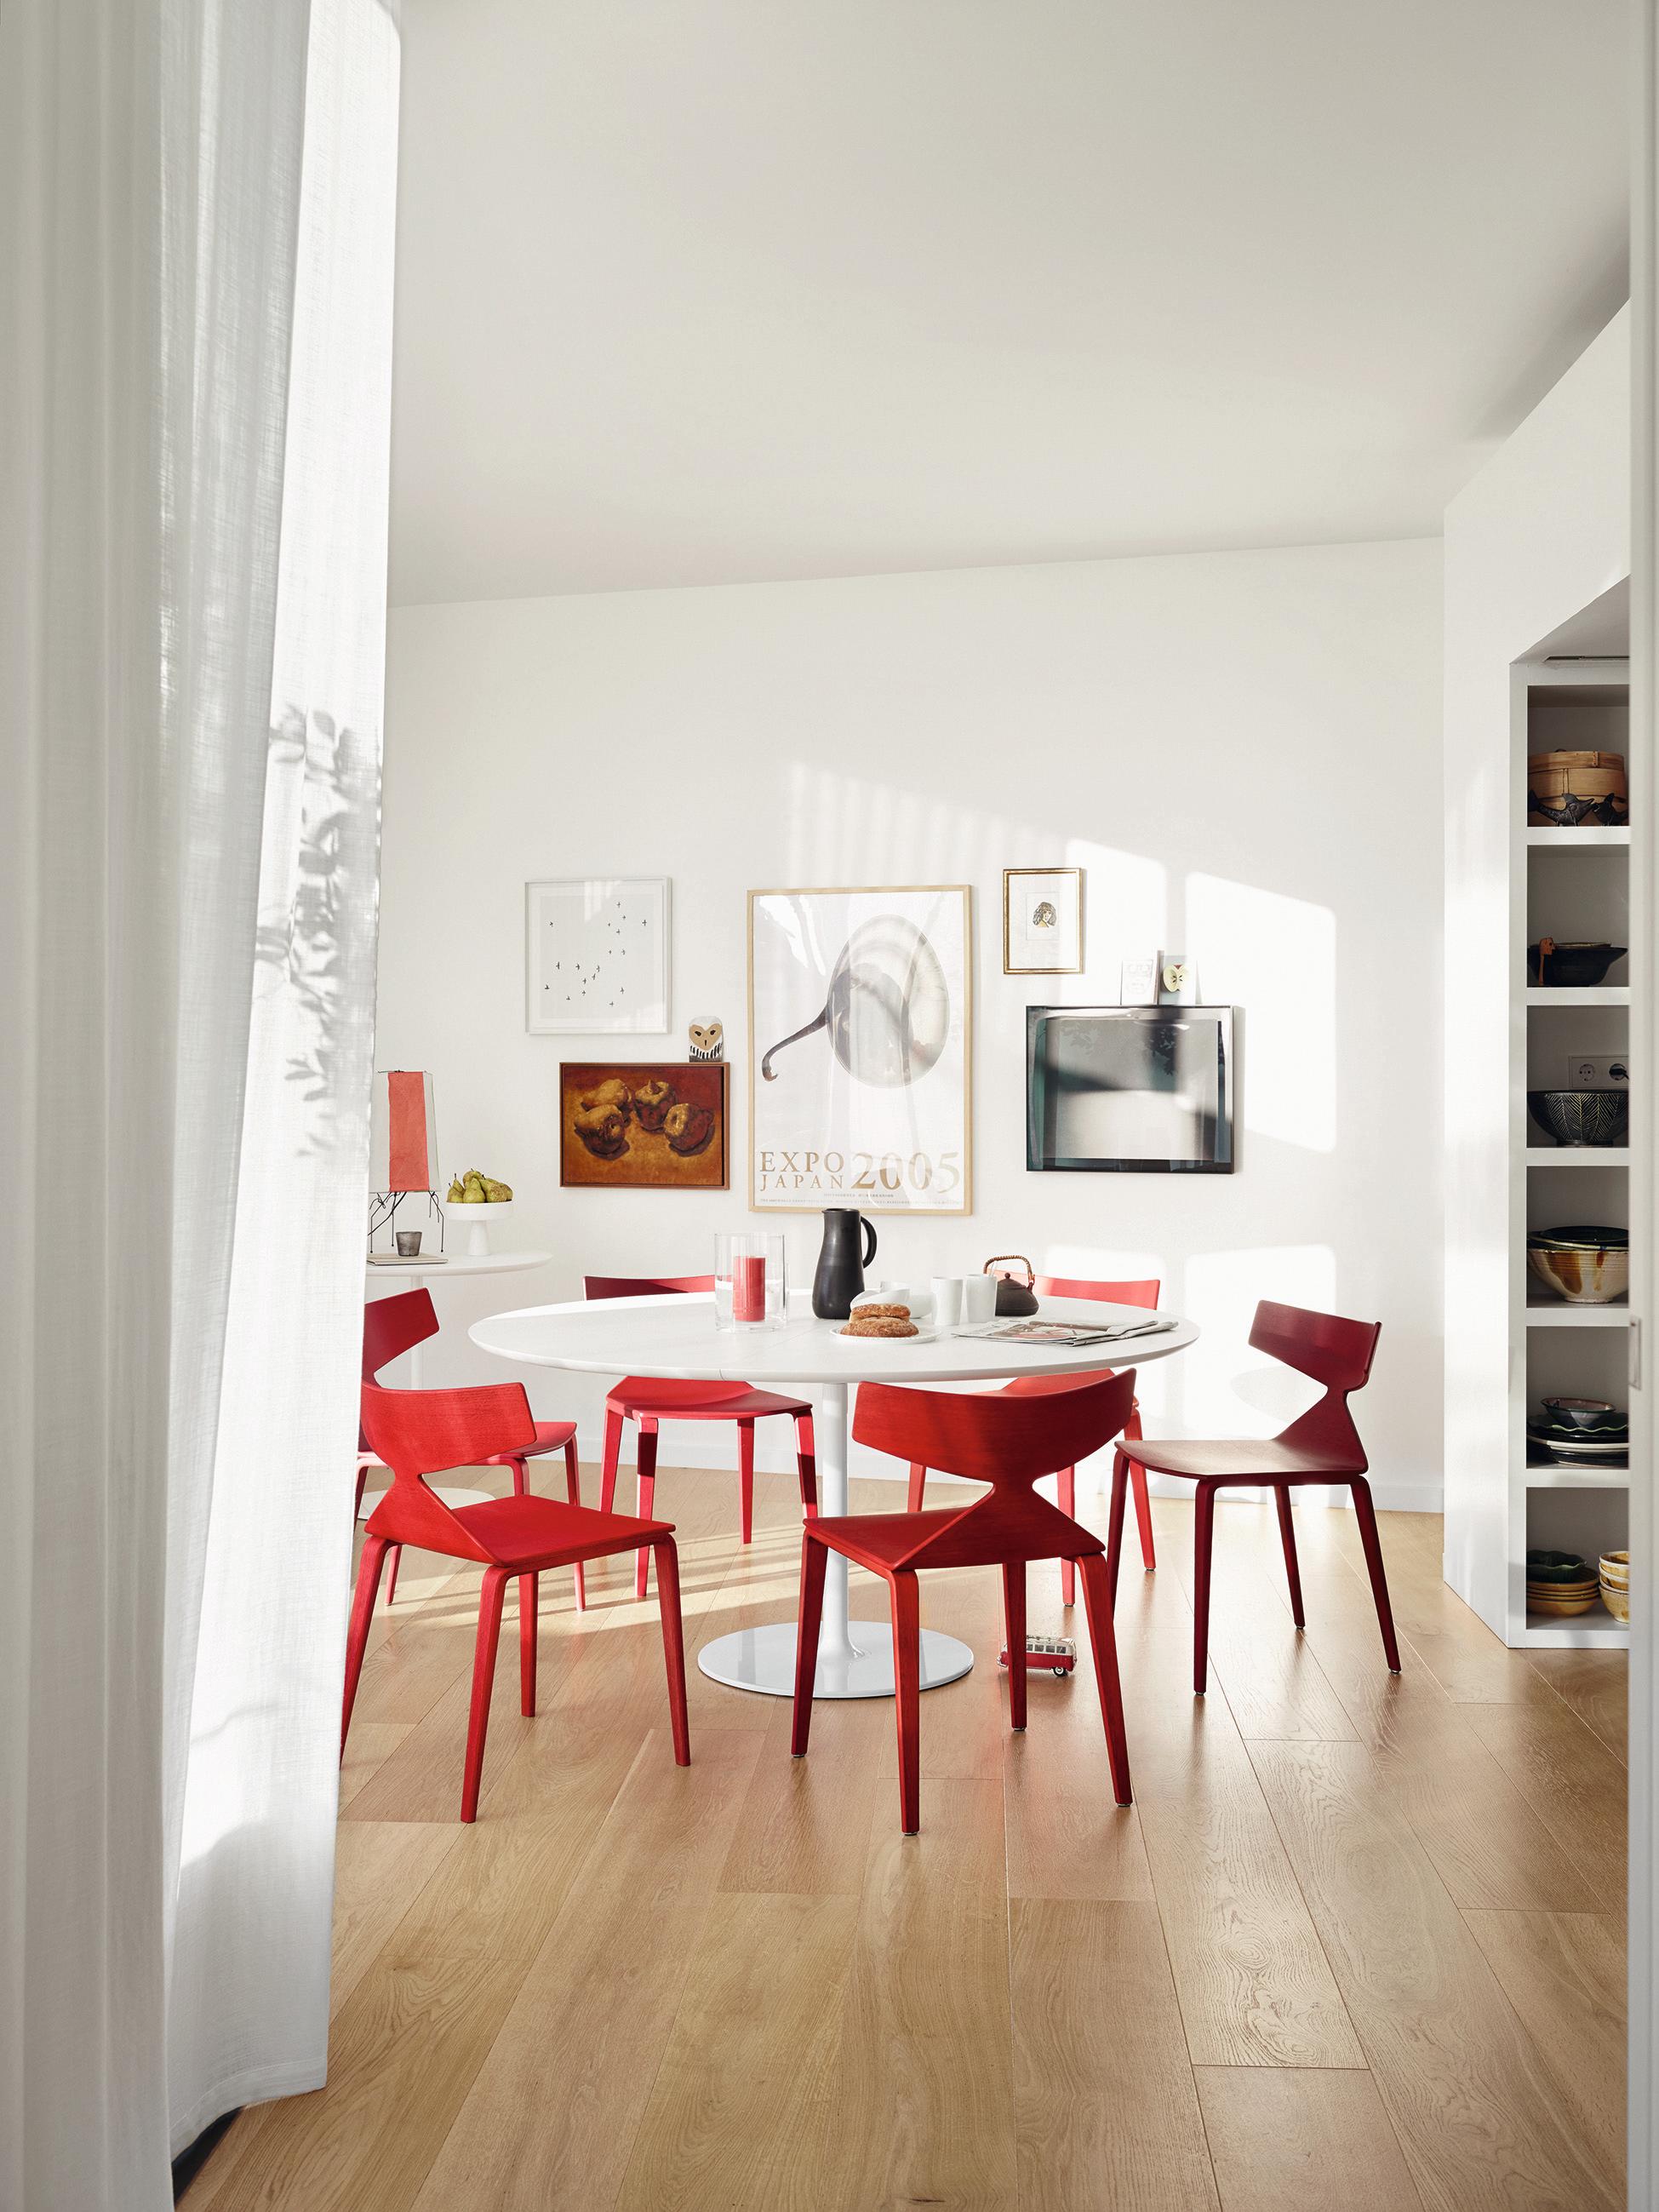 Rote Designer-Stühle im modernen Essbereich #stuhl #esstisch #runderesstisch #esszimmerstuhl ©Arper